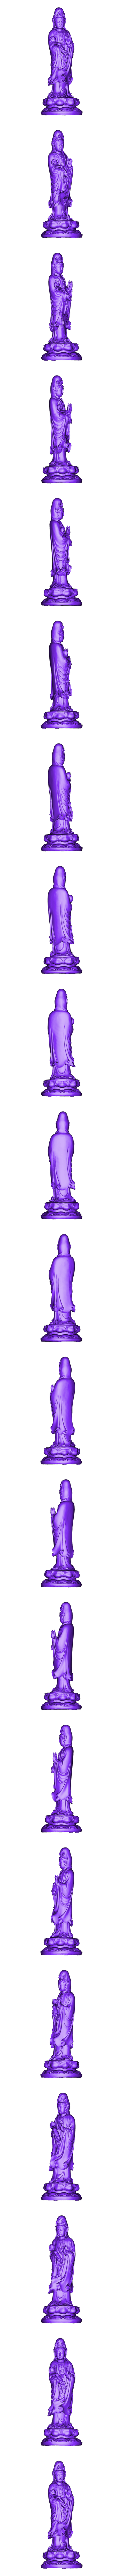 009guanyin.obj Télécharger fichier OBJ gratuit Guanyin bodhisattva Kwan-yin sculpture pour imprimante cnc ou 3d • Objet pour impression 3D, stlfilesfree